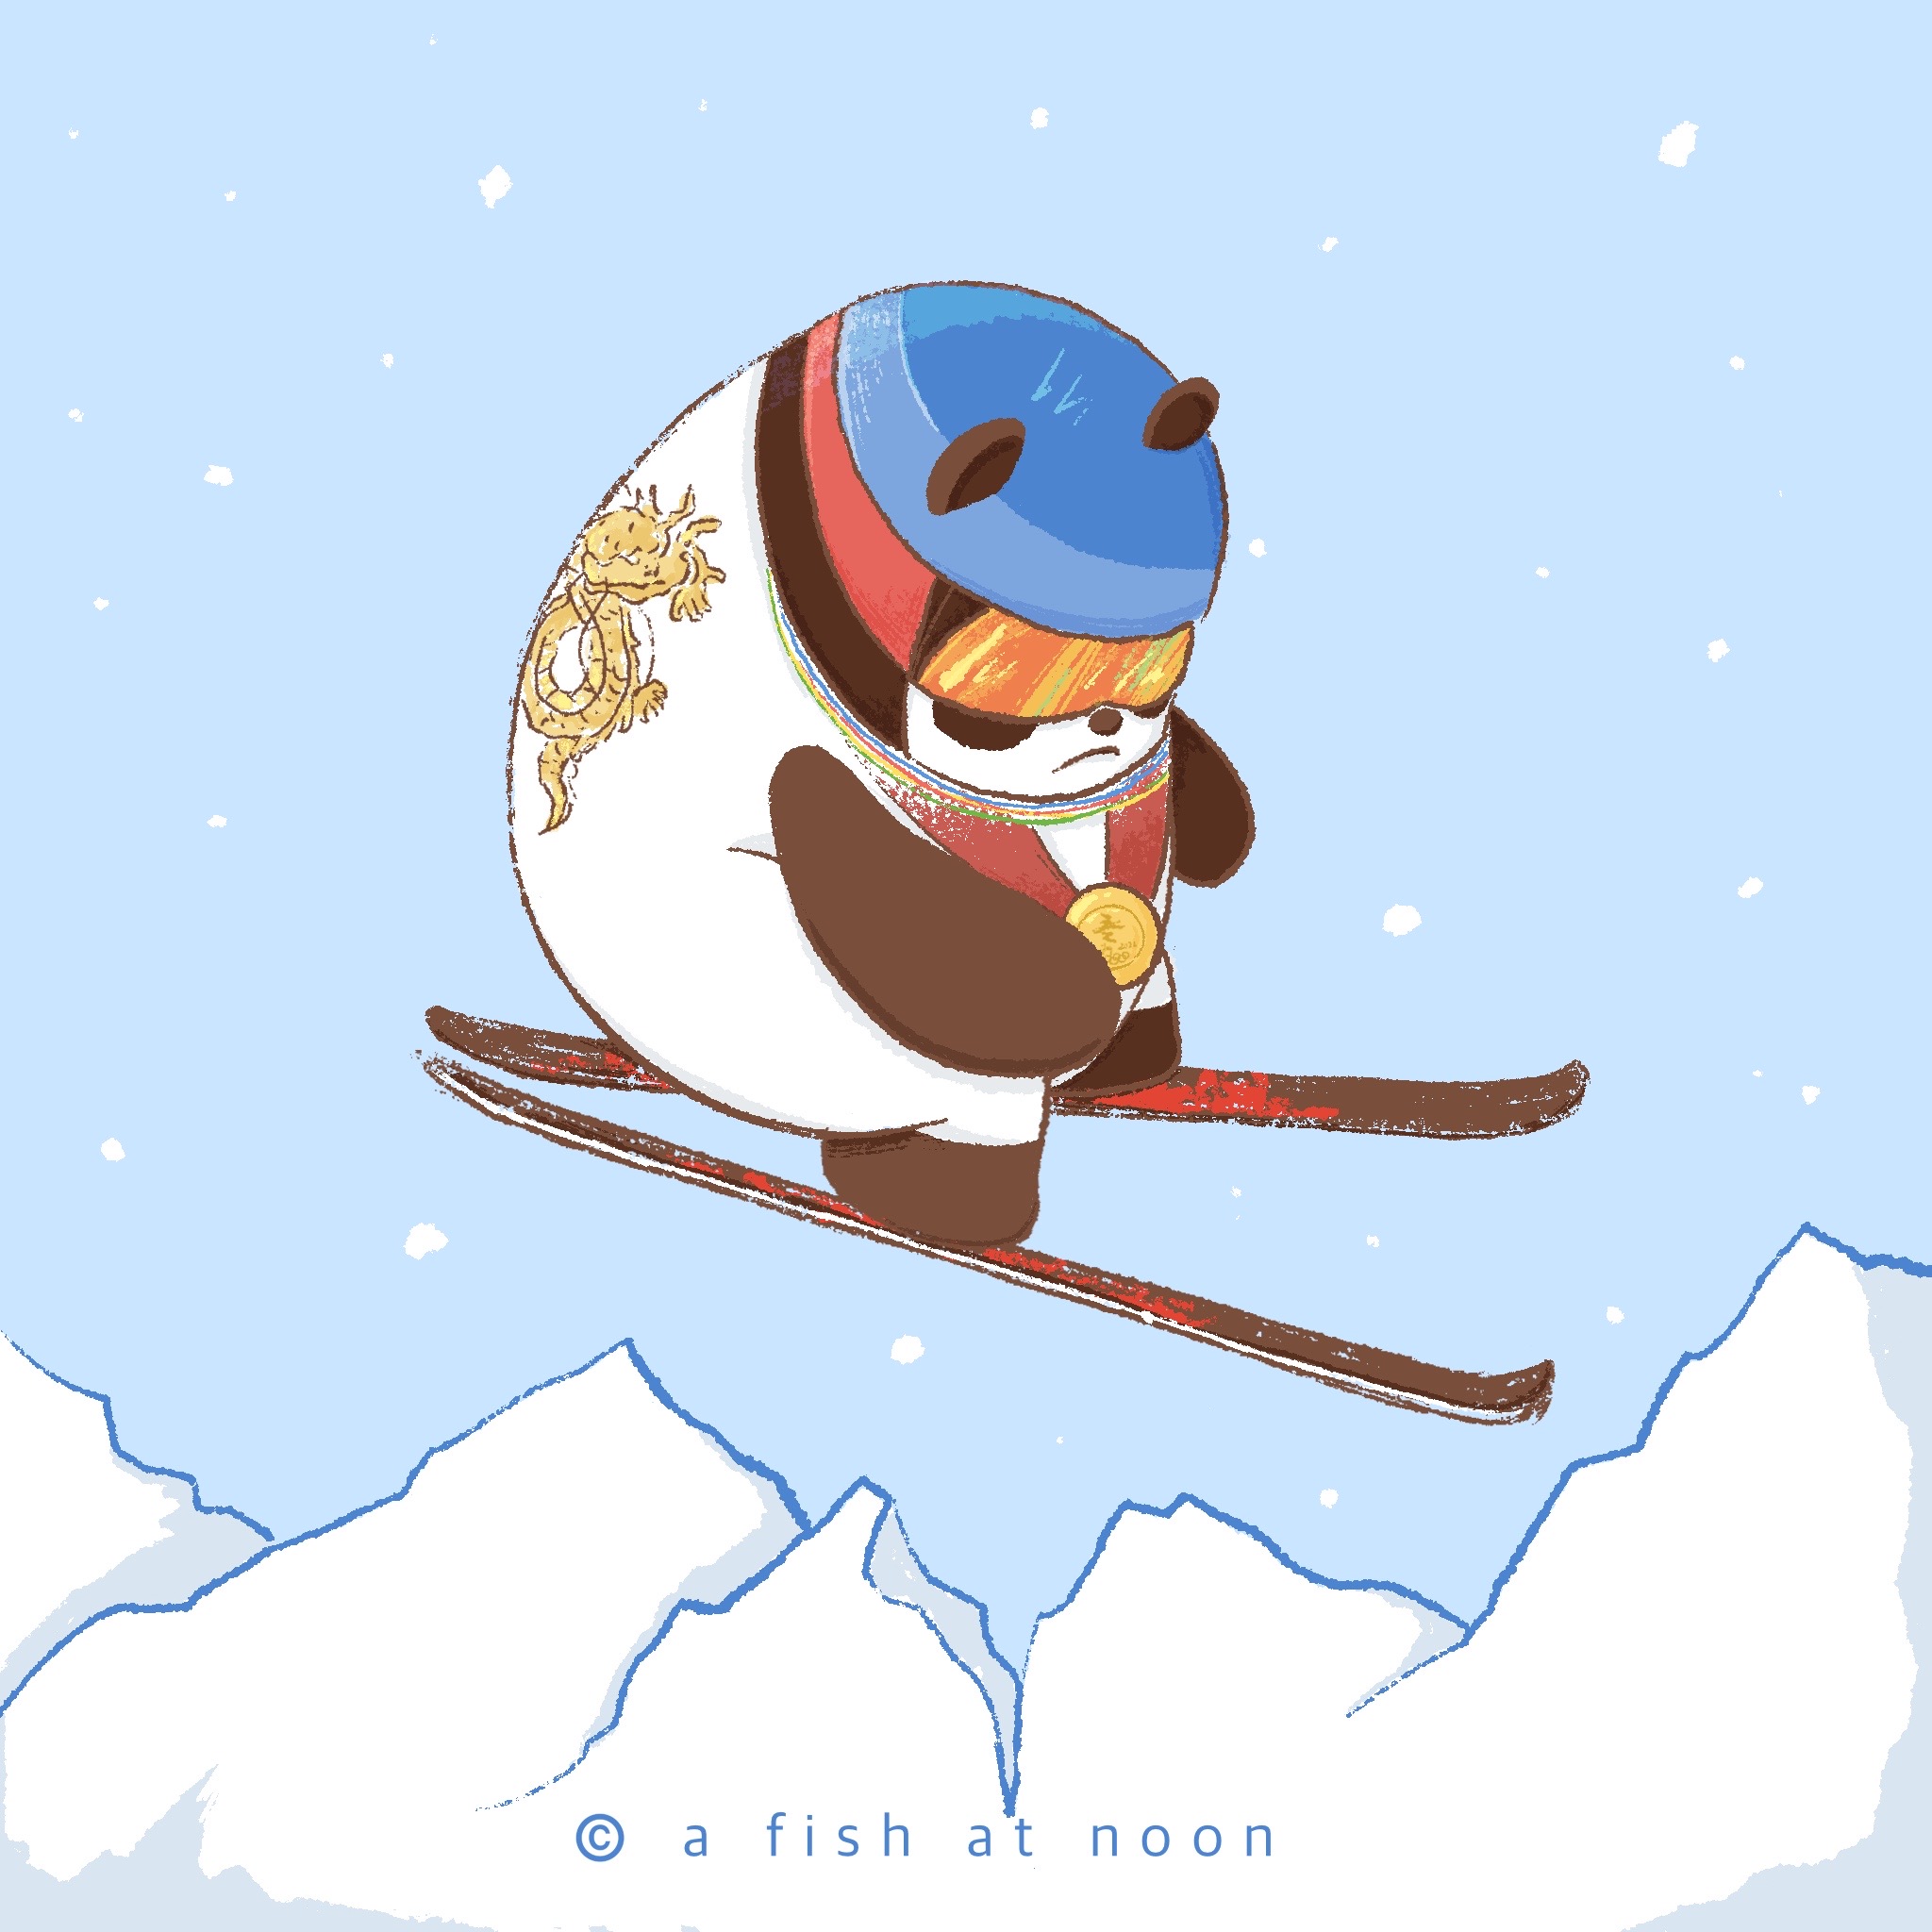 跳台滑雪冰墩墩卡通图片